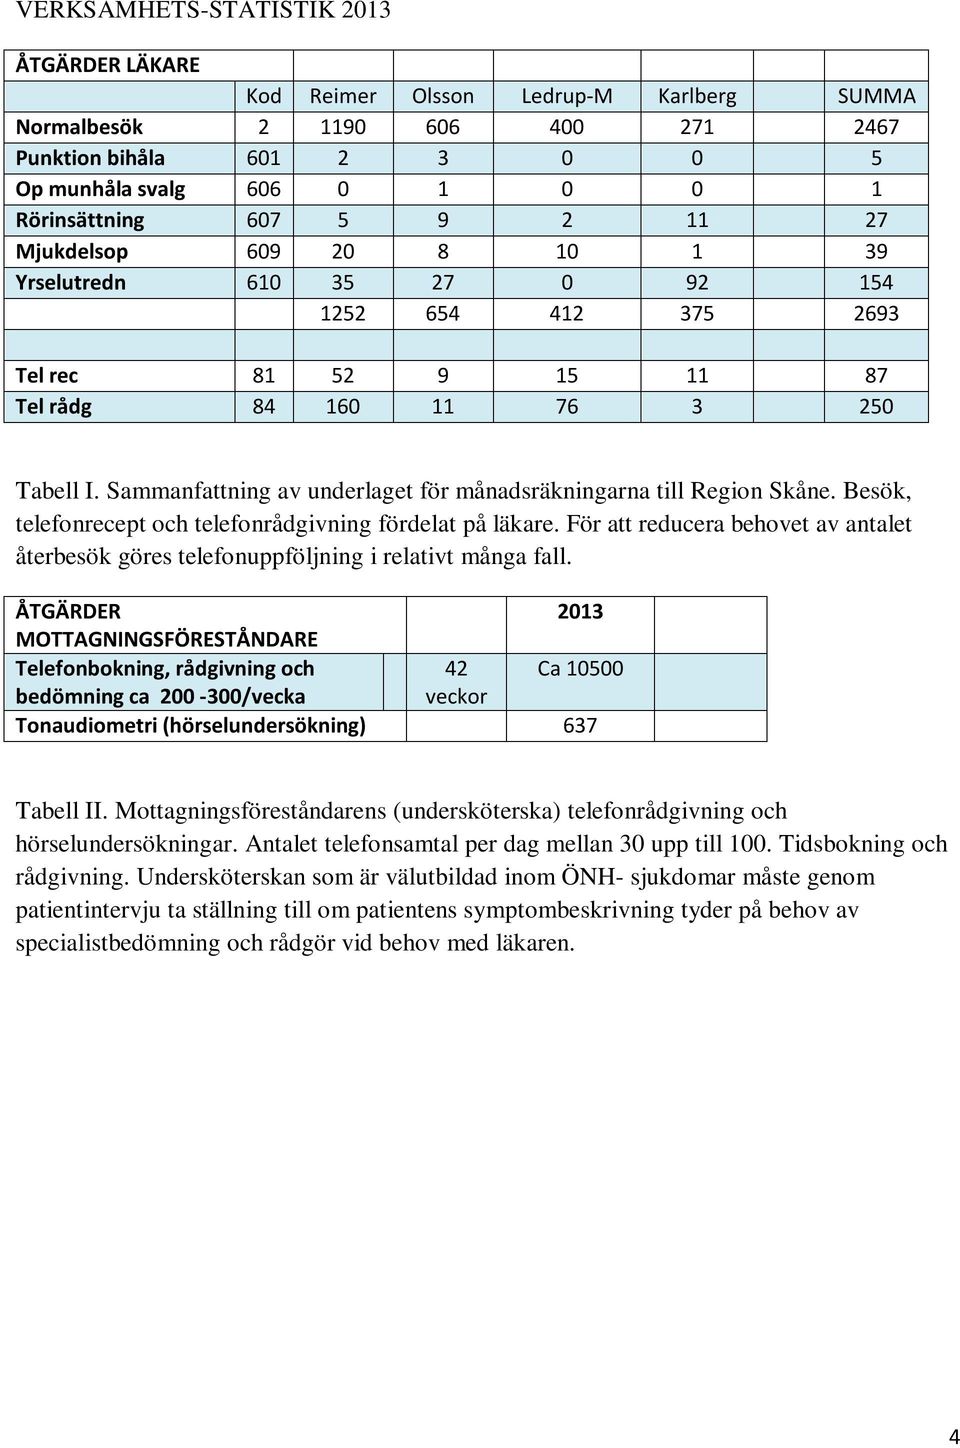 Sammanfattning av underlaget för månadsräkningarna till Region Skåne. Besök, telefonrecept och telefonrådgivning fördelat på läkare.